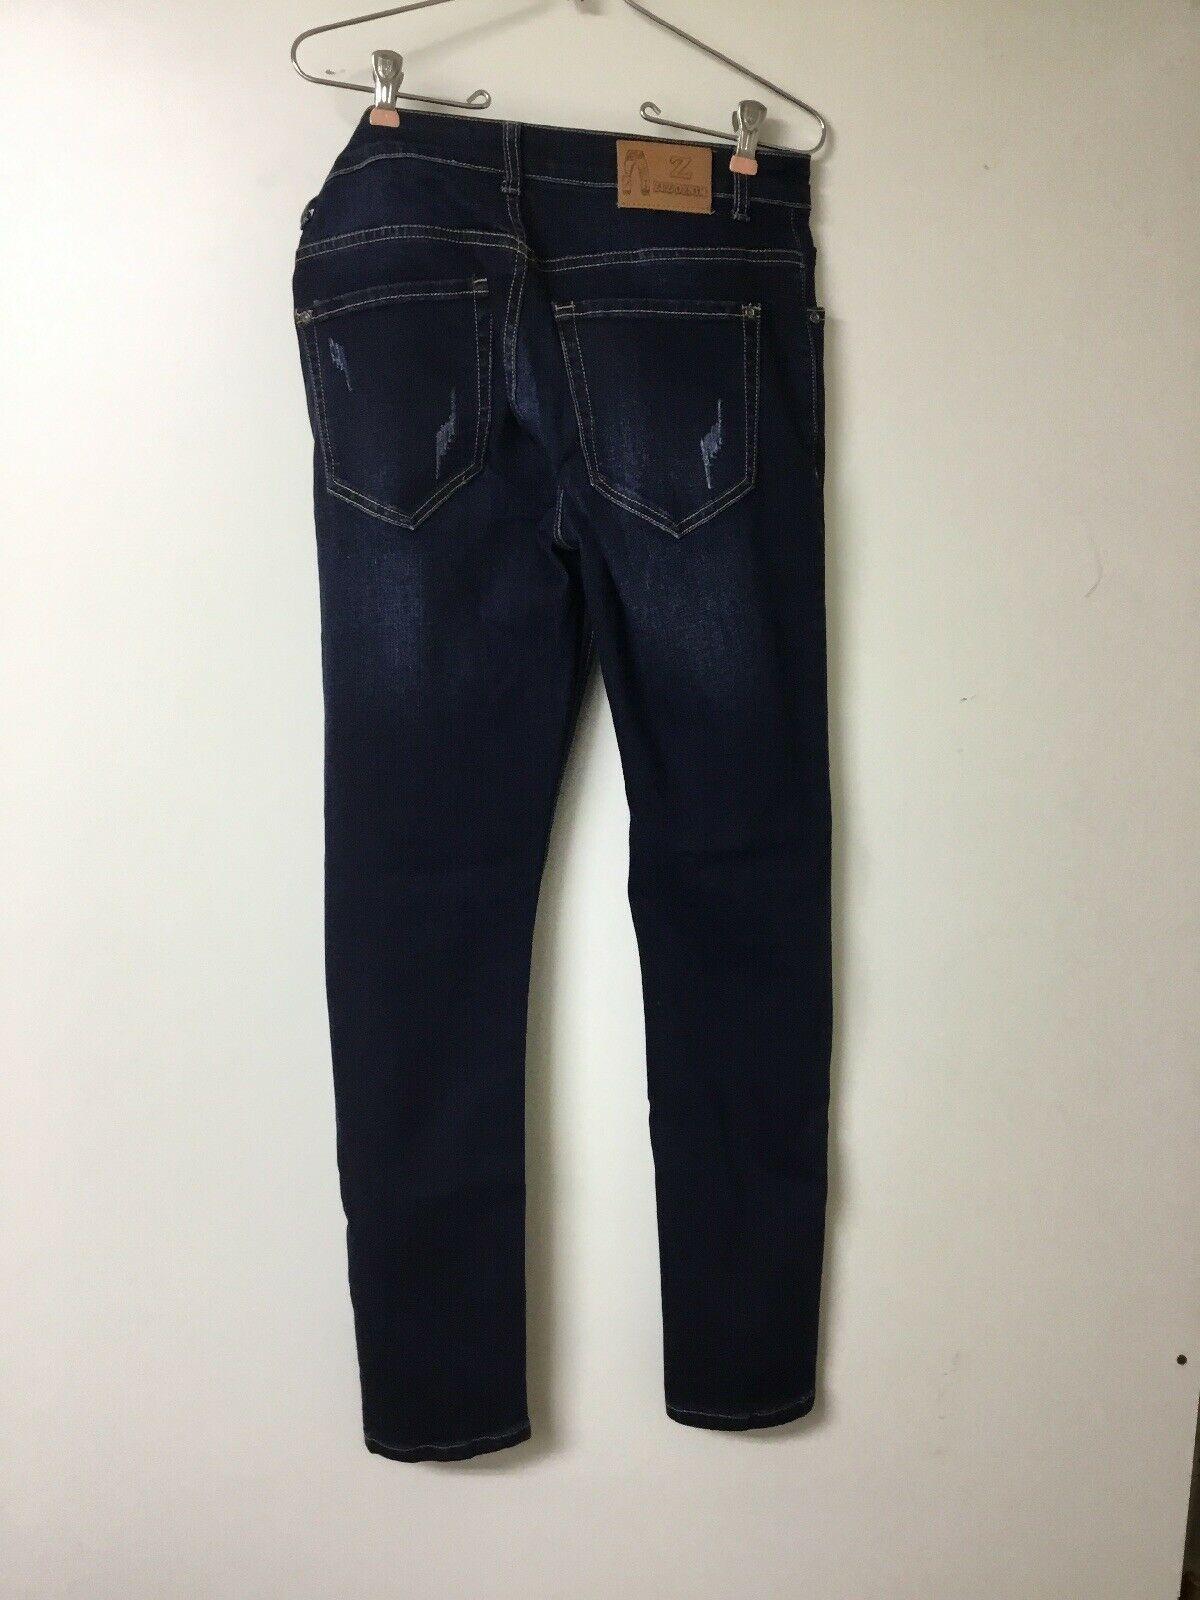 ZLZ Men's Skinny Slim Fit Stretch Comfy Fashion Blue Denim Jeans size ...